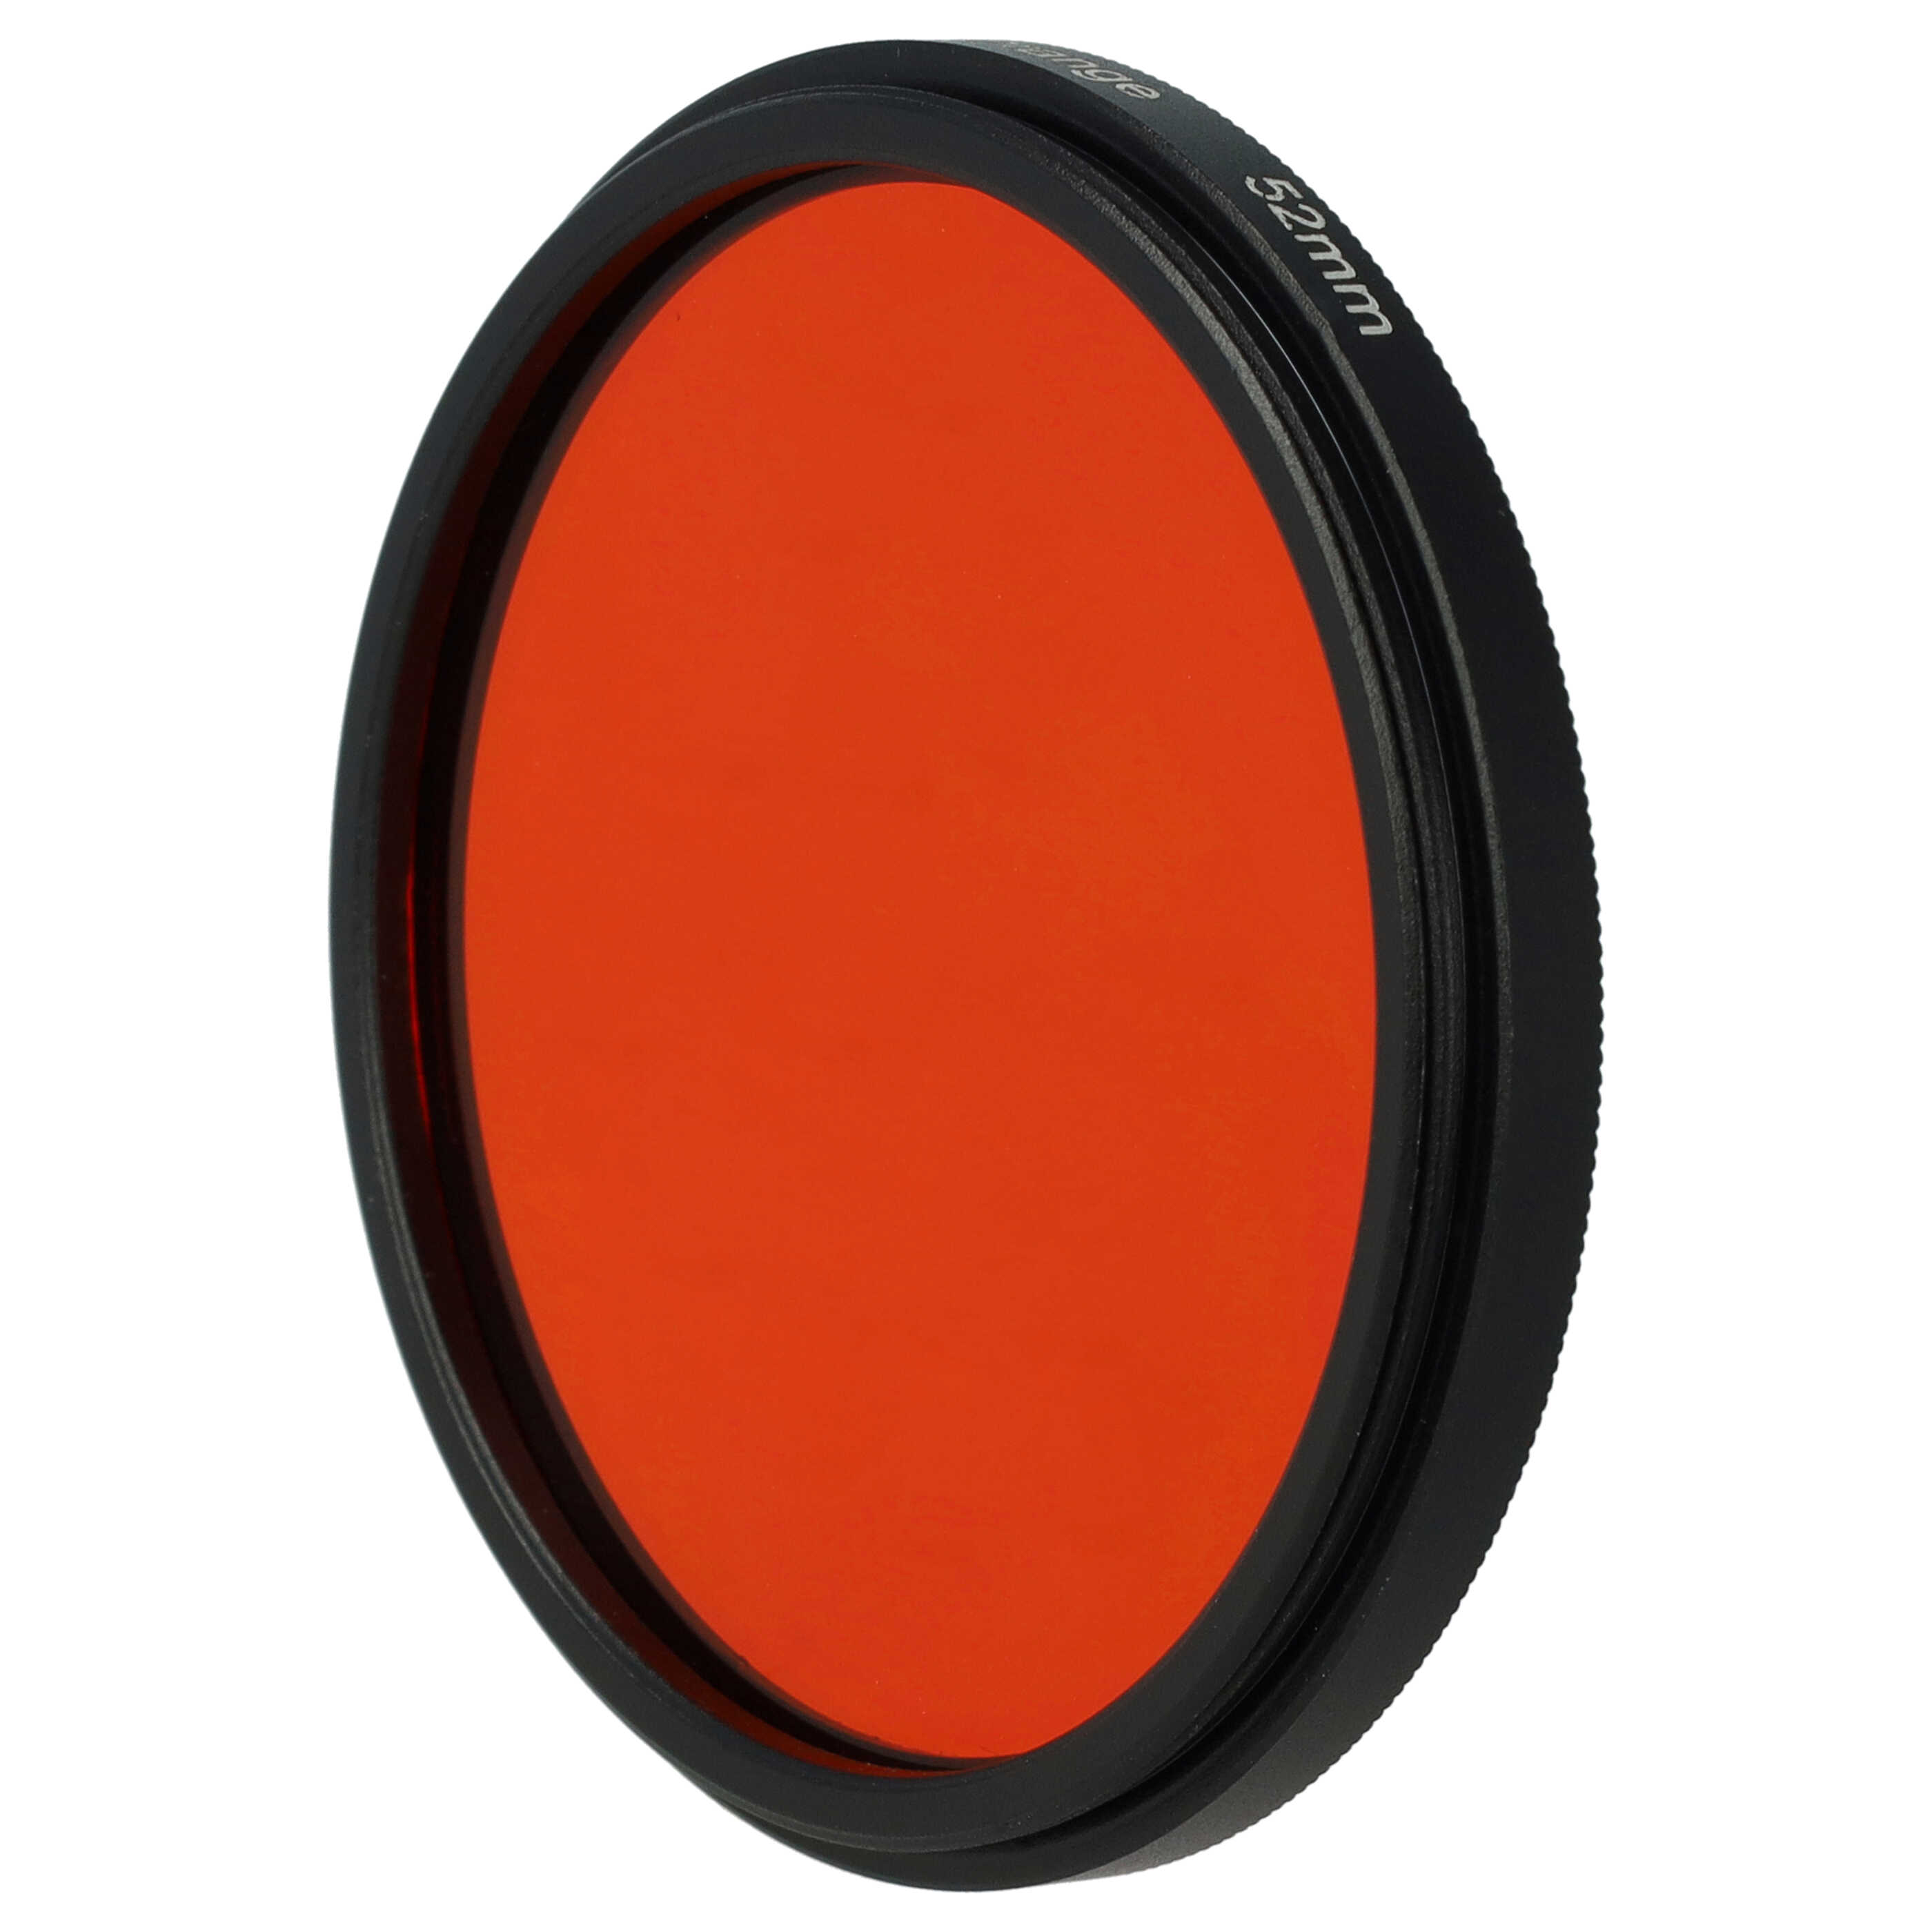 Filtro de color para objetivo de cámara con rosca de filtro de 52 mm - Filtro naranja